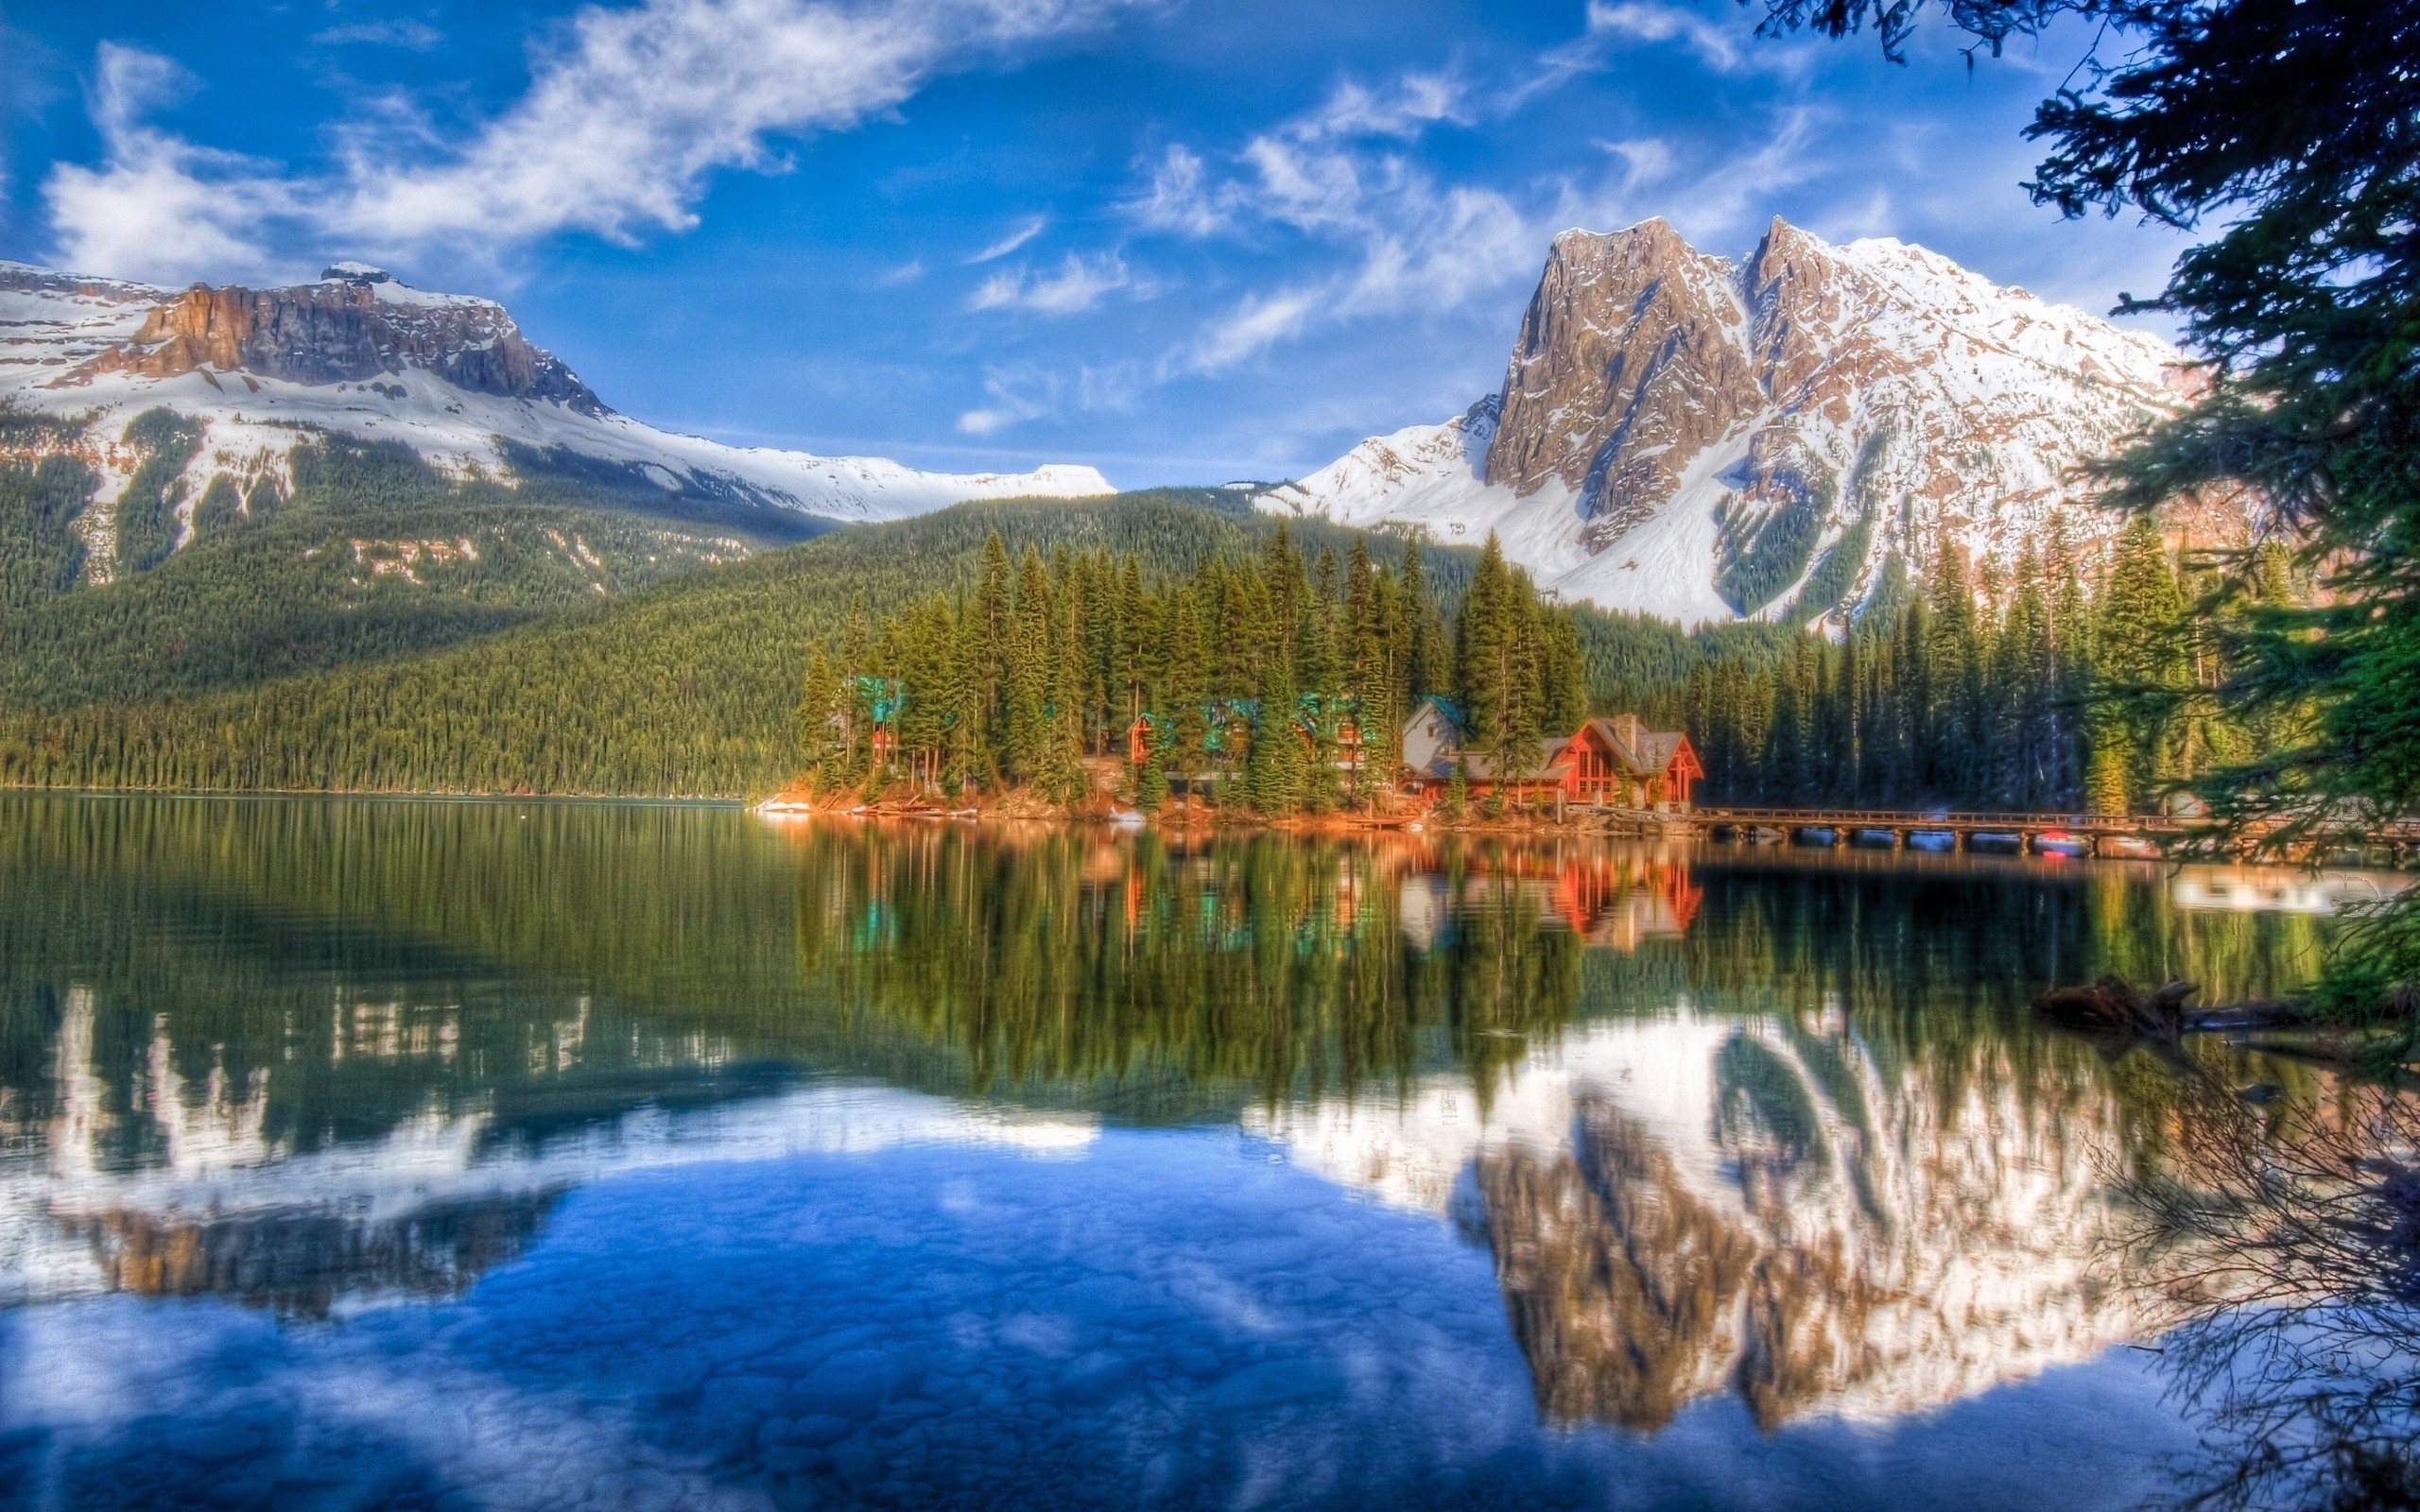 منظره ای زیبا با دریاچه ای در جنگل و کوه های مرتفع سفیدپوش برای پروفایل واتساپ